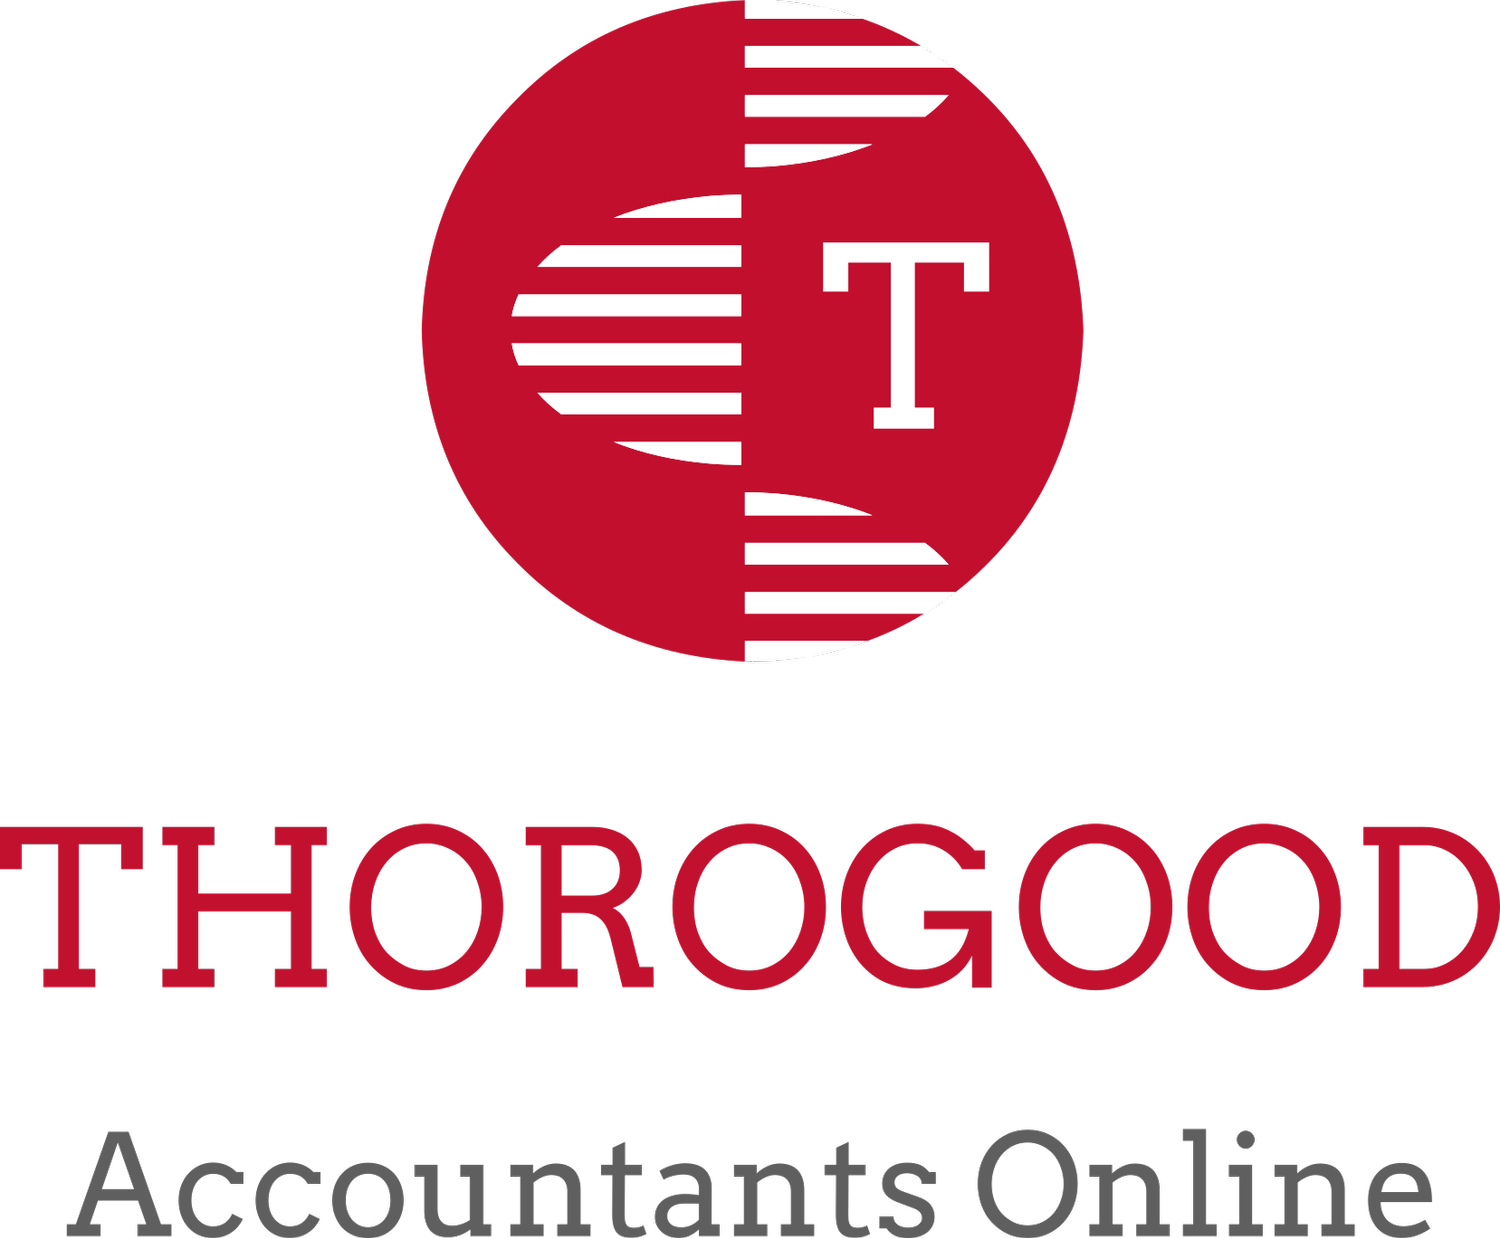 THOROGOOD Accountants Online